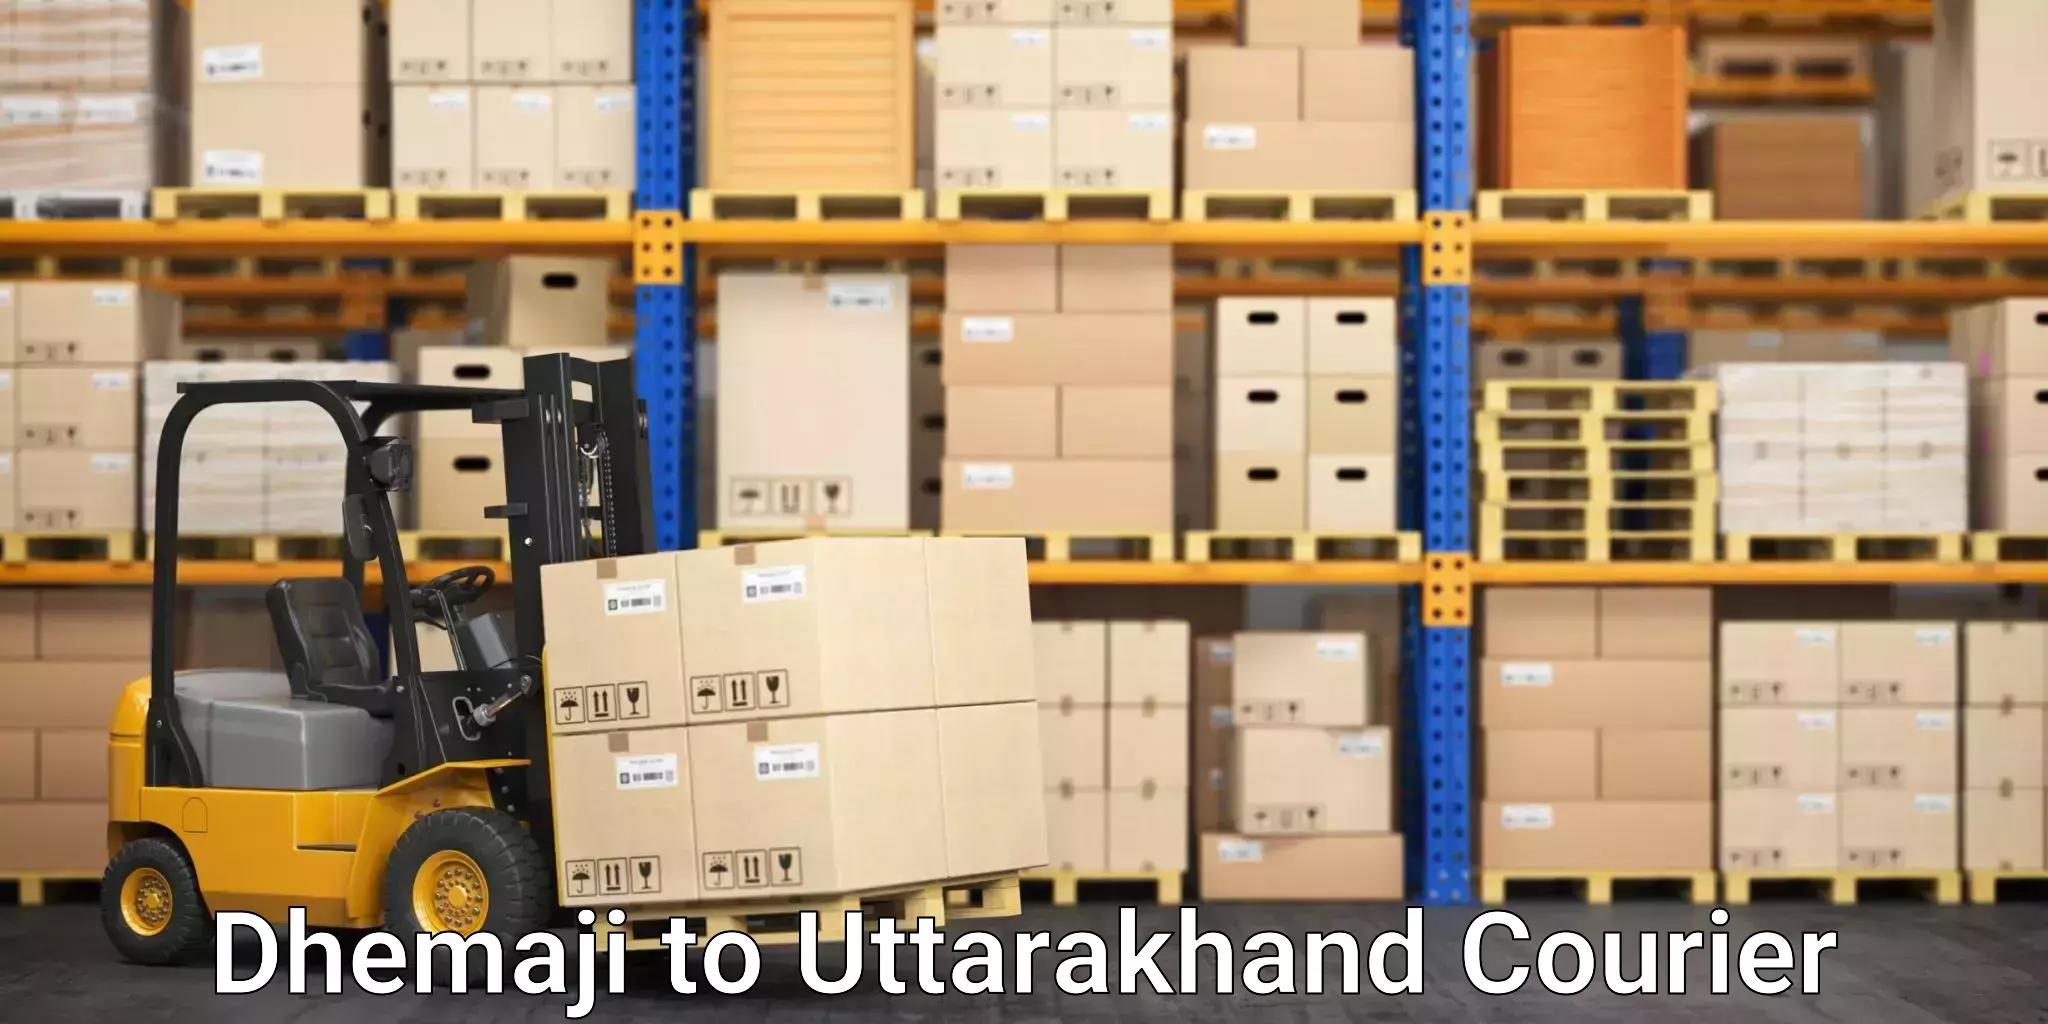 Logistics service provider Dhemaji to Uttarakhand